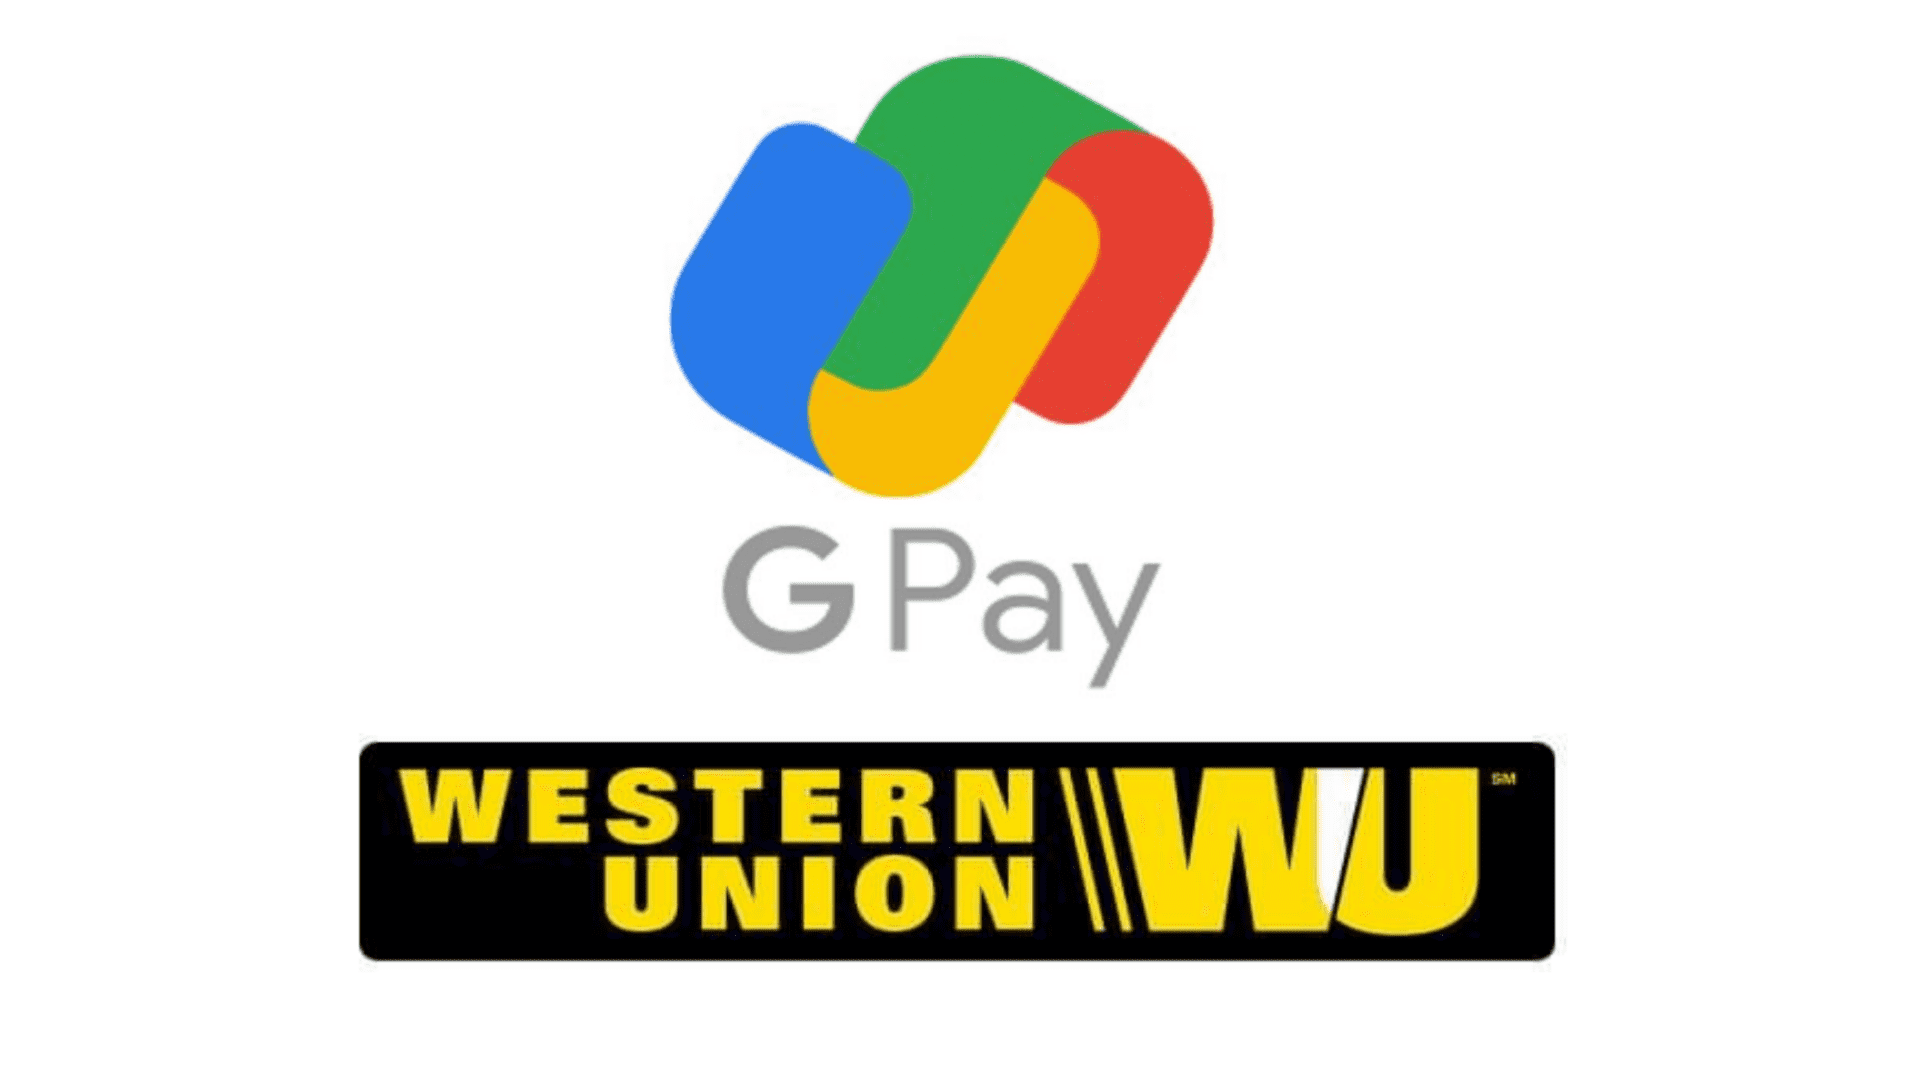 خدمة Google Pay تدعم إرسال الاموال عبر Western Union الى أحبائك